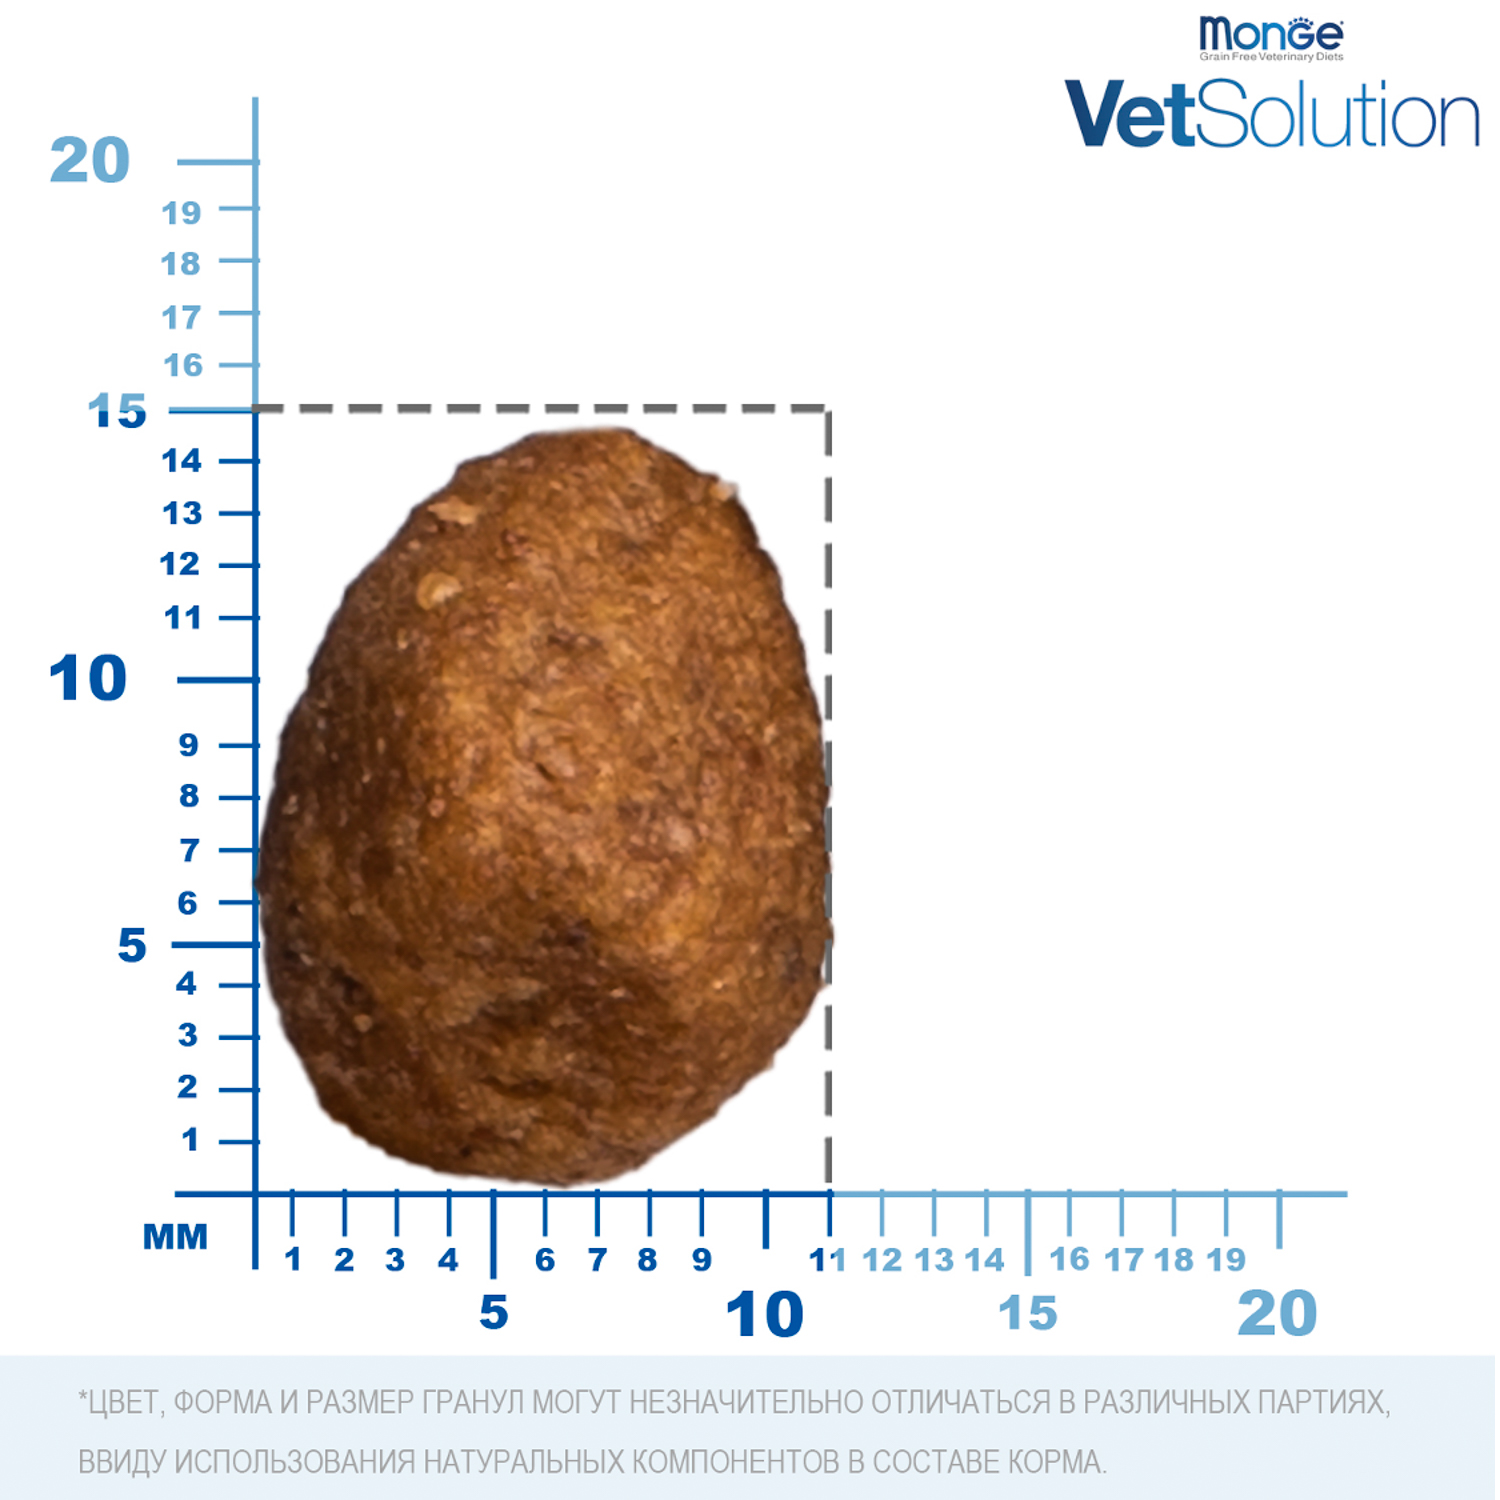 Ветеринарная диета Monge VetSolution Dog Obesity Обесити диета для собак при избыточном весе 12 кг